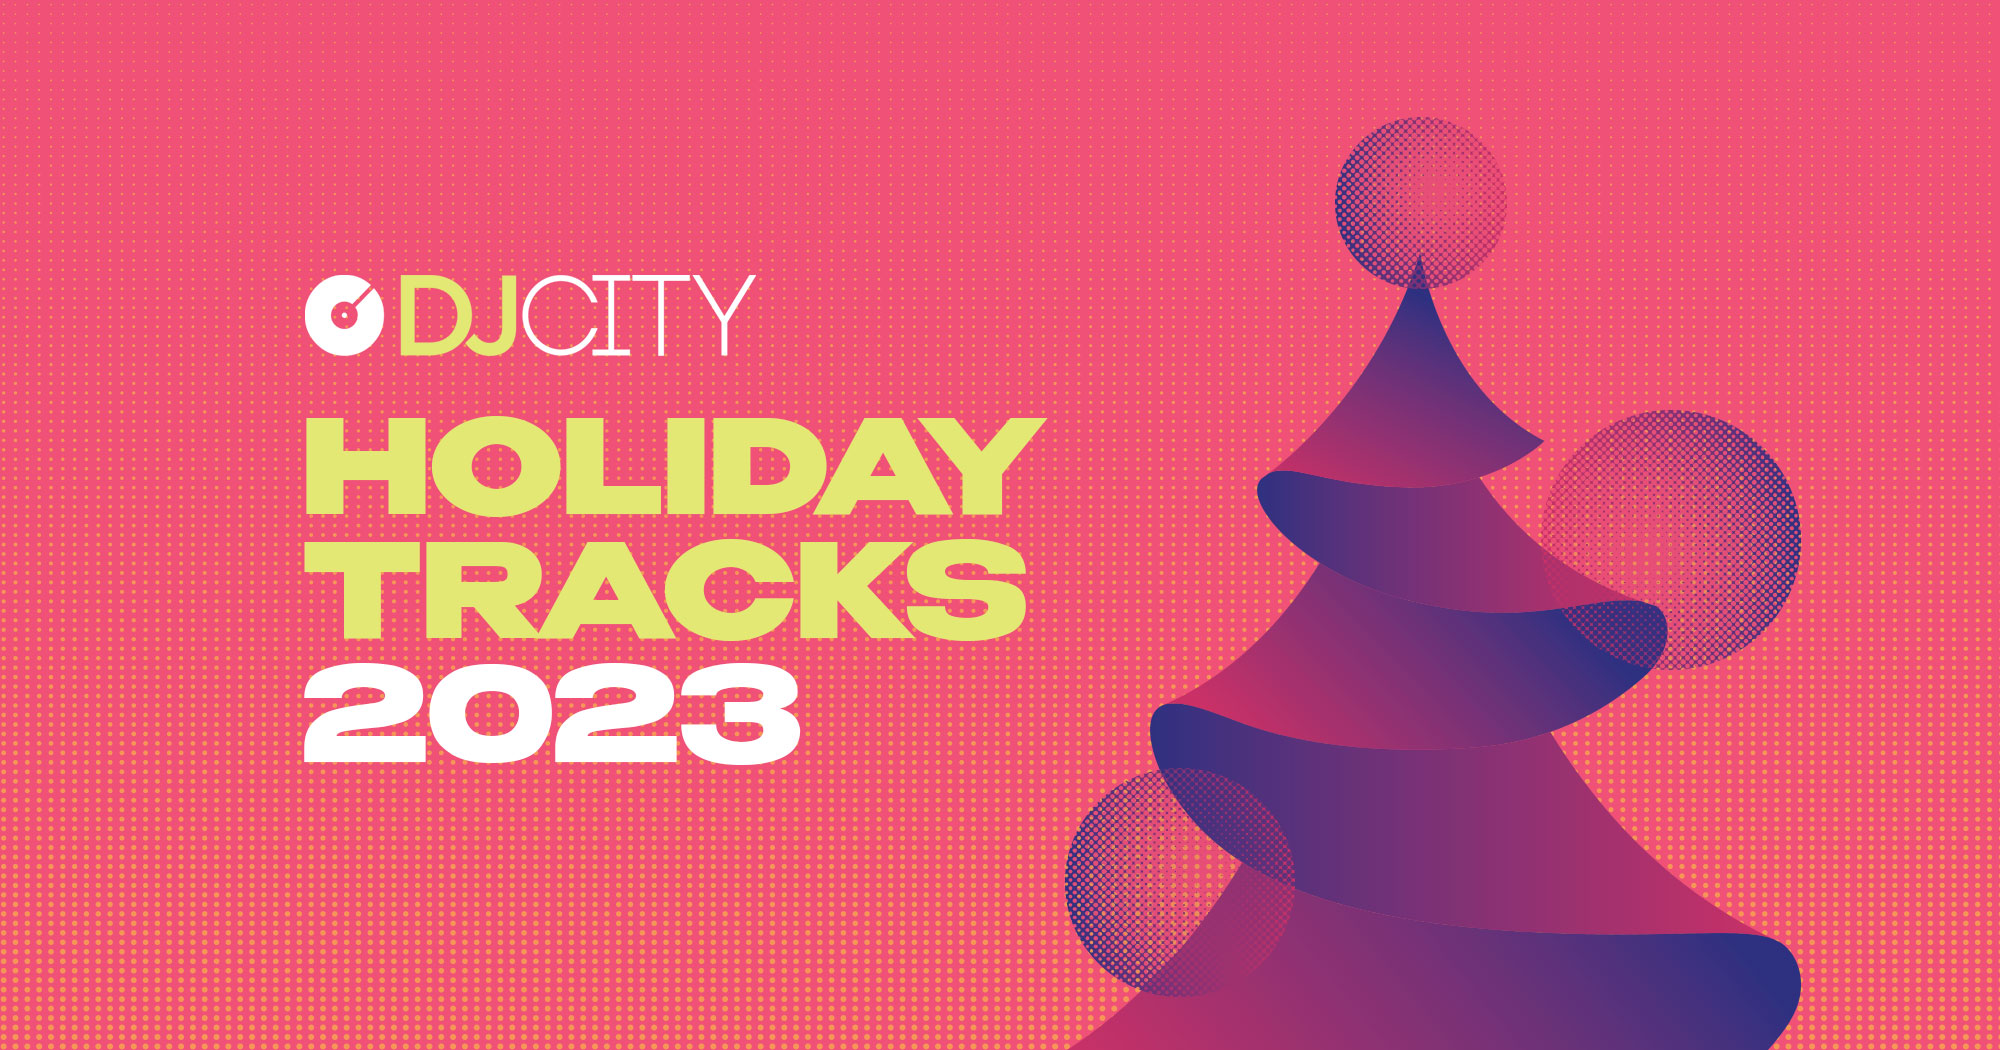 DJcity’s Holiday Tracks 2023